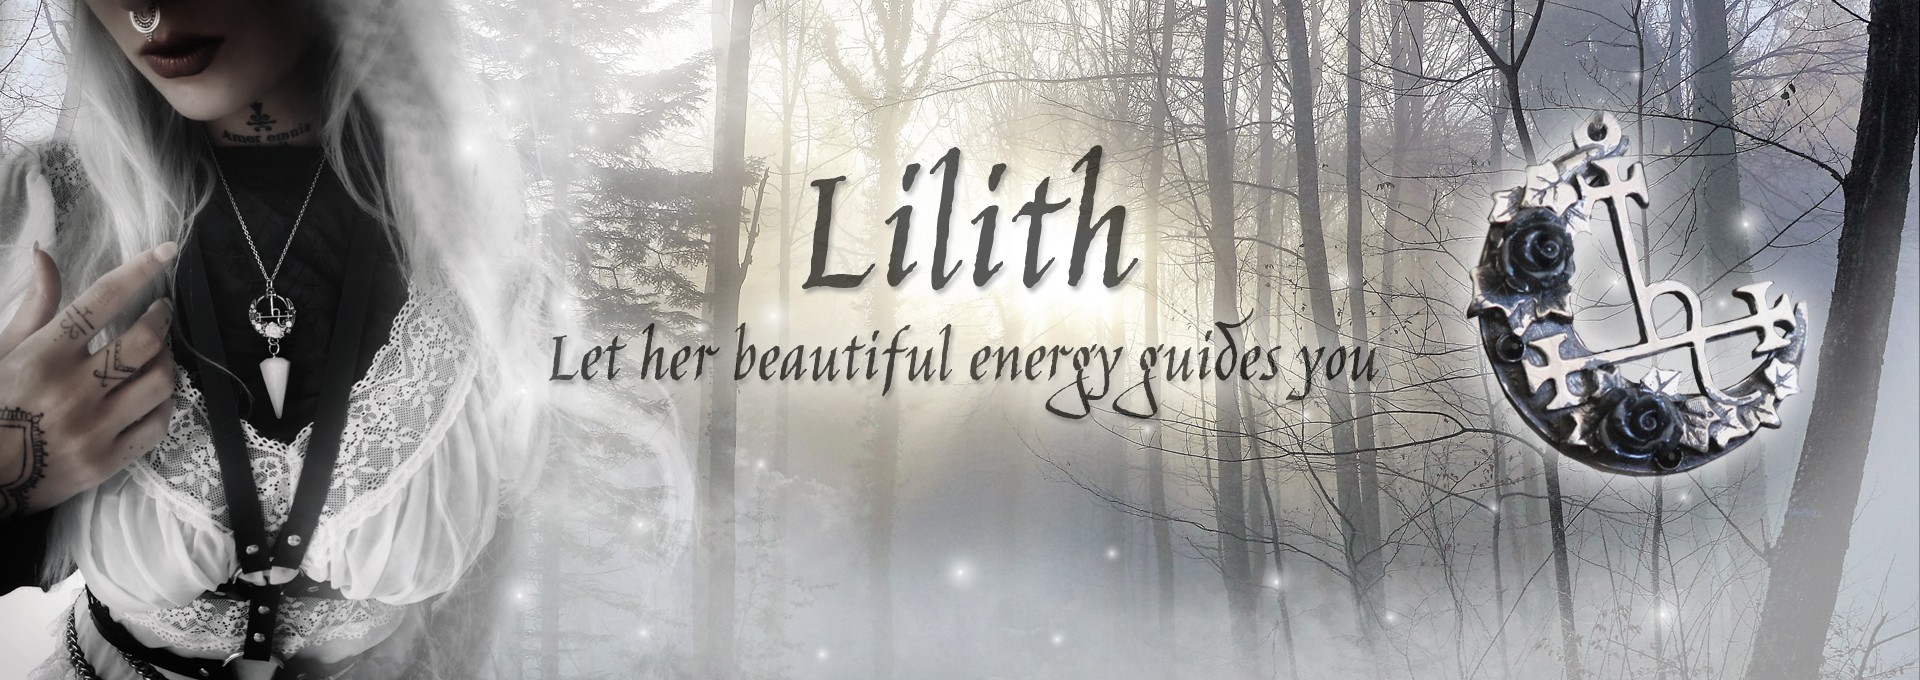 Sigil of Lilith